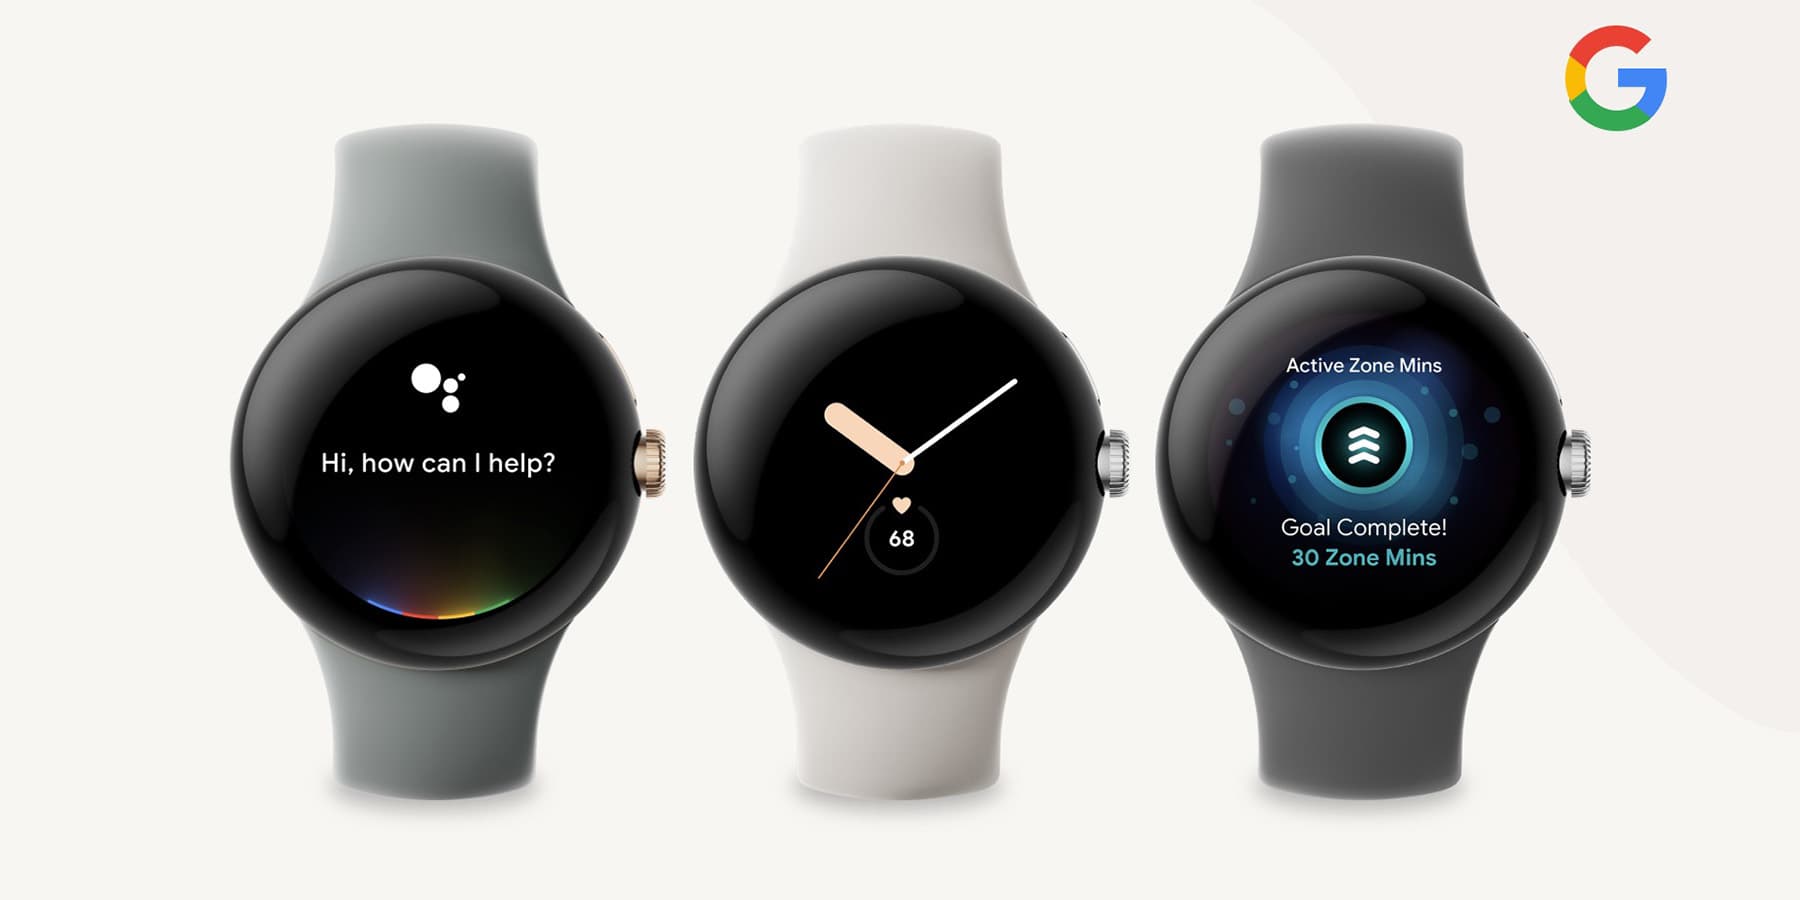 Plotka: Google wprowadzi Pixel Watch wraz z Pixel 7 i Pixel 7 Pro, zegarek będzie kosztował około 400 USD